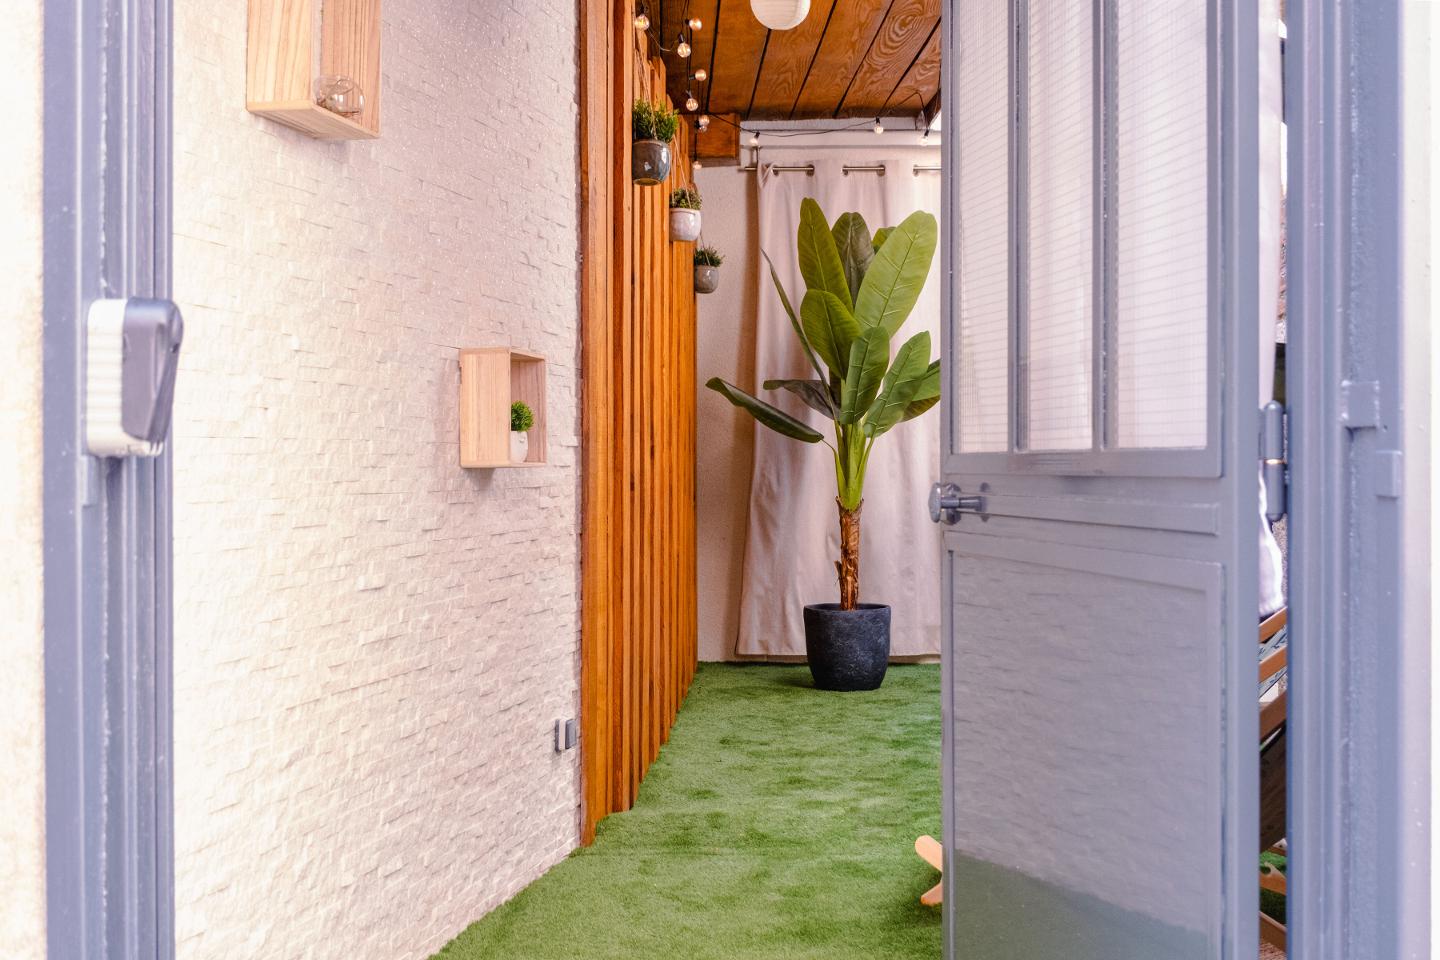 Hôte GreenGo: Viens on s'aime - Suite romantique avec jacuzzi et sauna privatifs - Image 3